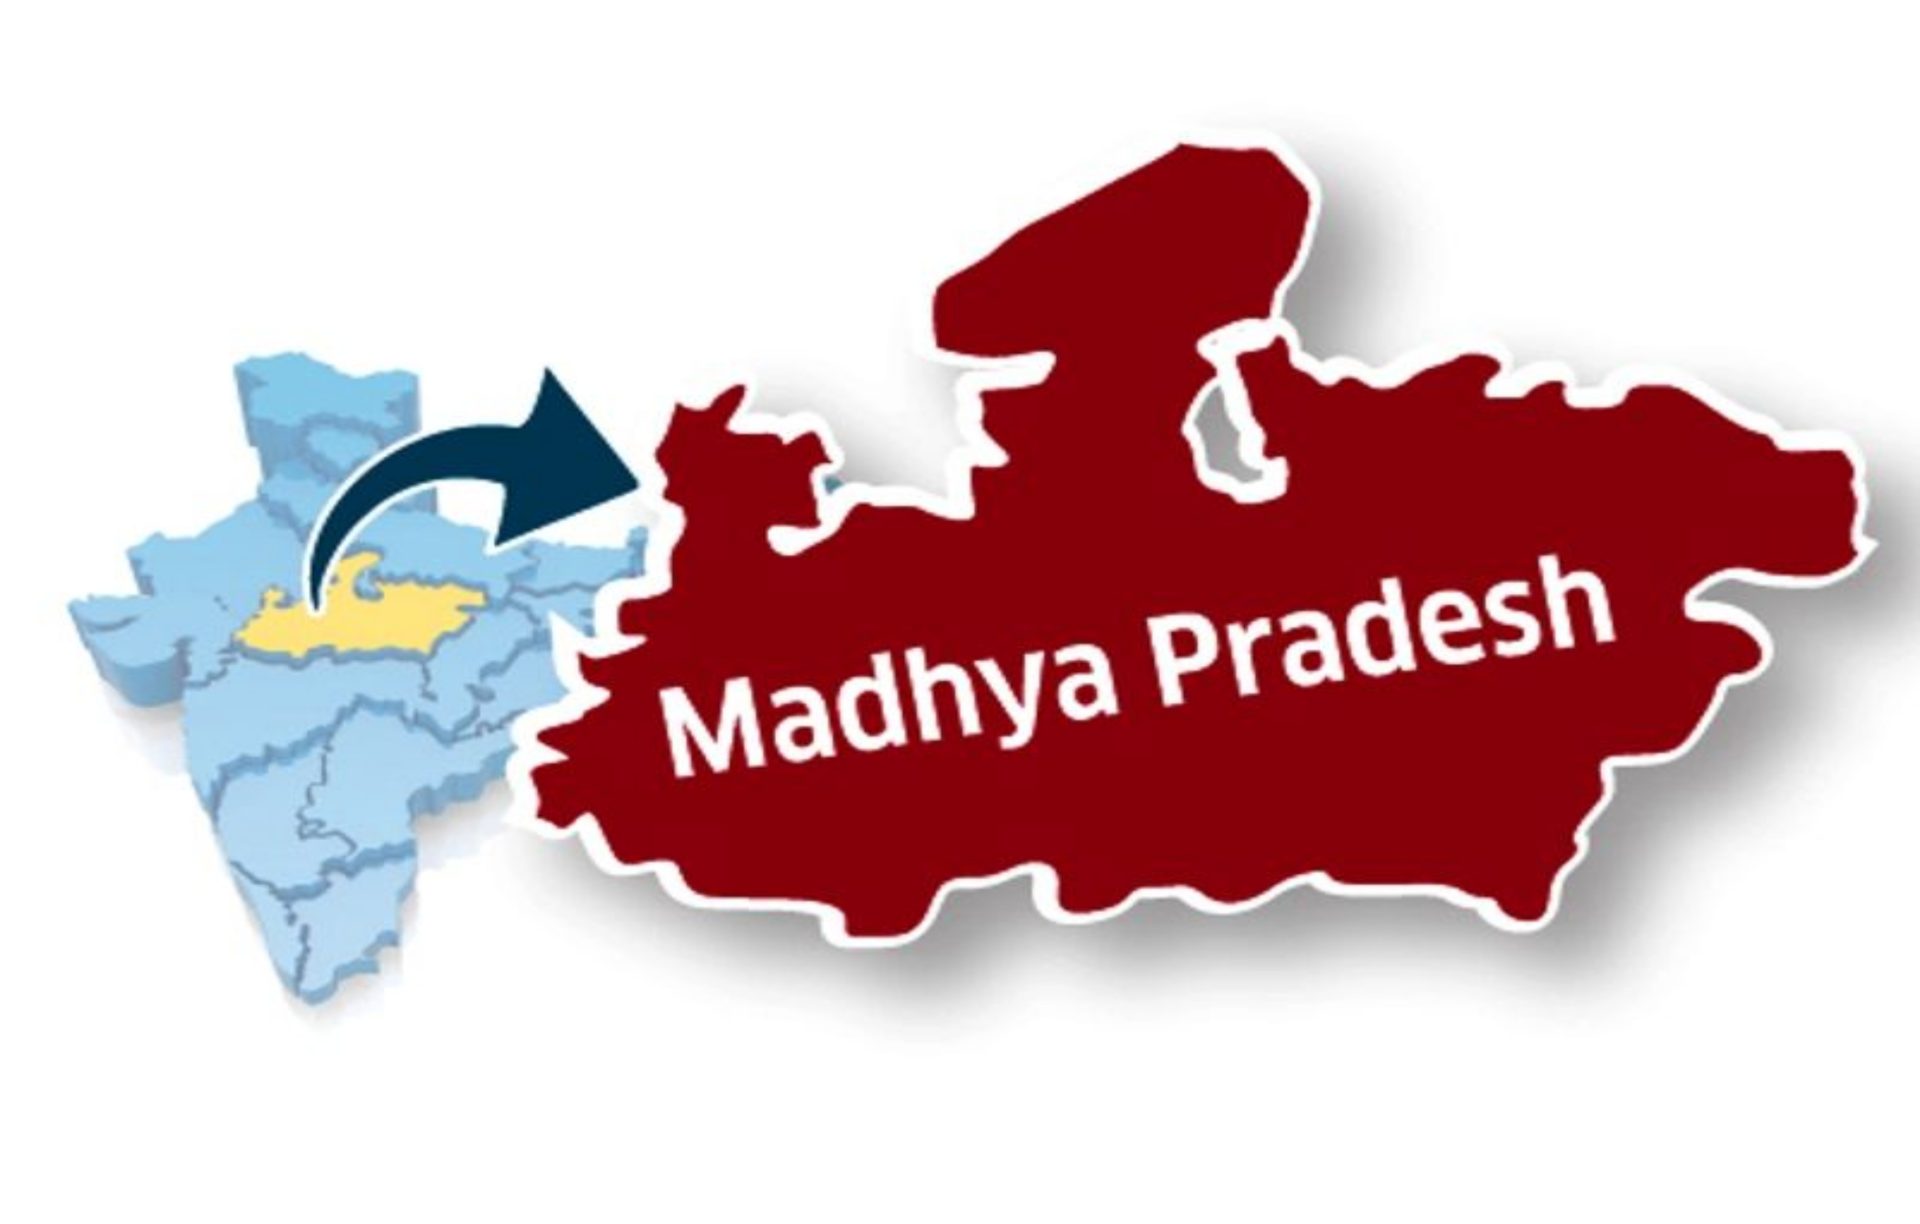 नया मुकाम : मंडला जिले ने हासिल की बड़ी उपलब्धि, बना MP का 100% साक्षर जिला...